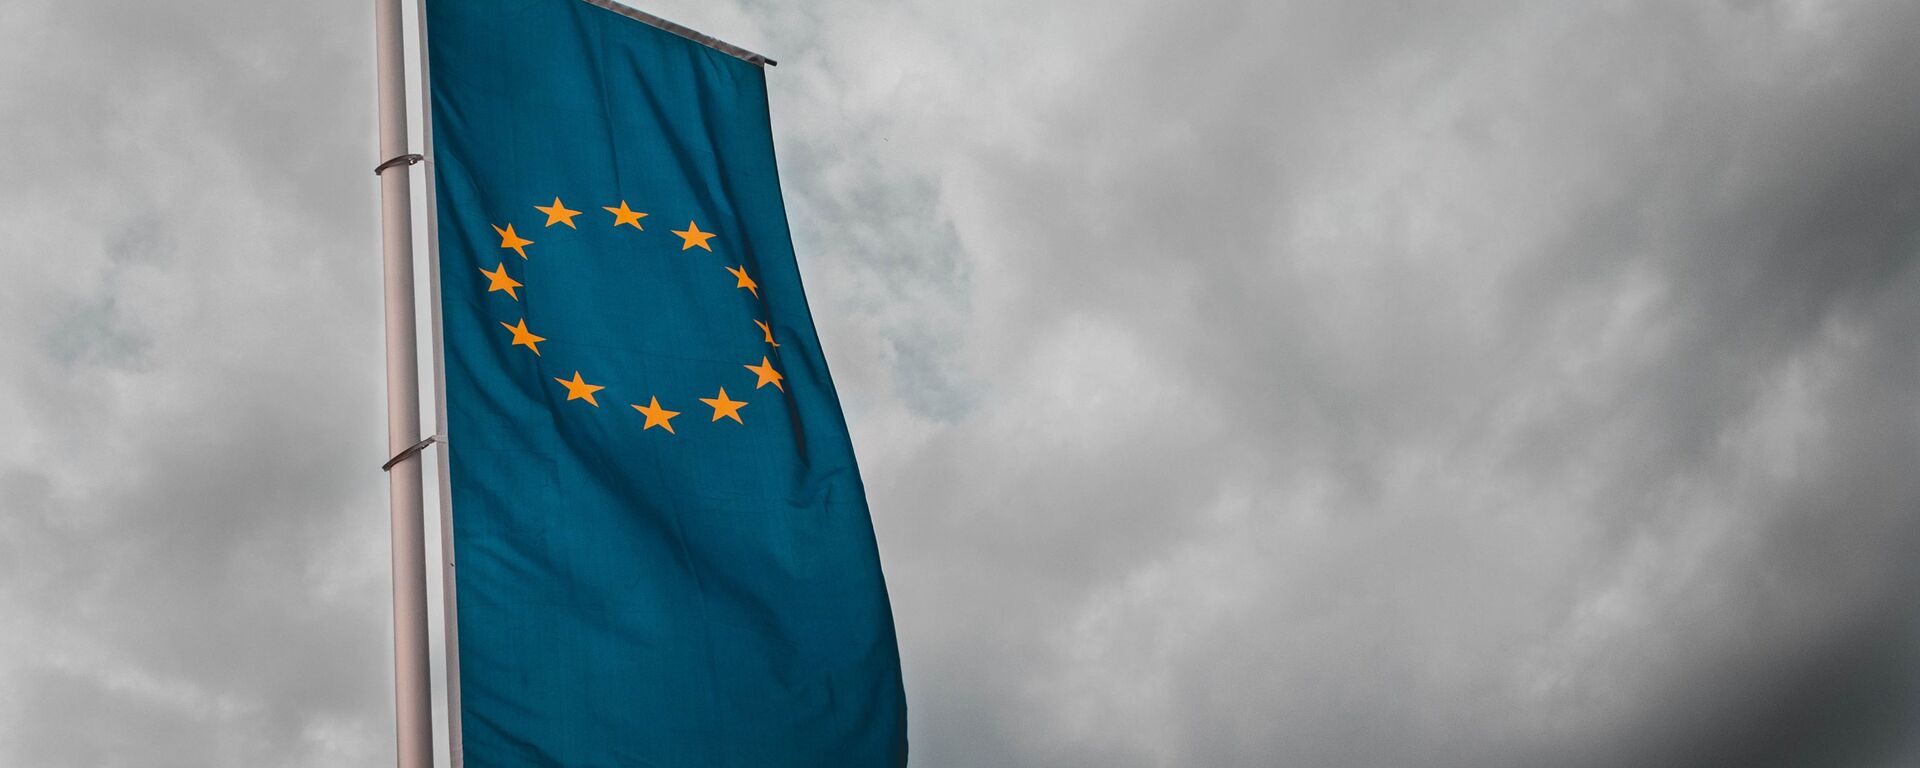 Bandera de la Unión Europea - Sputnik Mundo, 1920, 28.01.2021